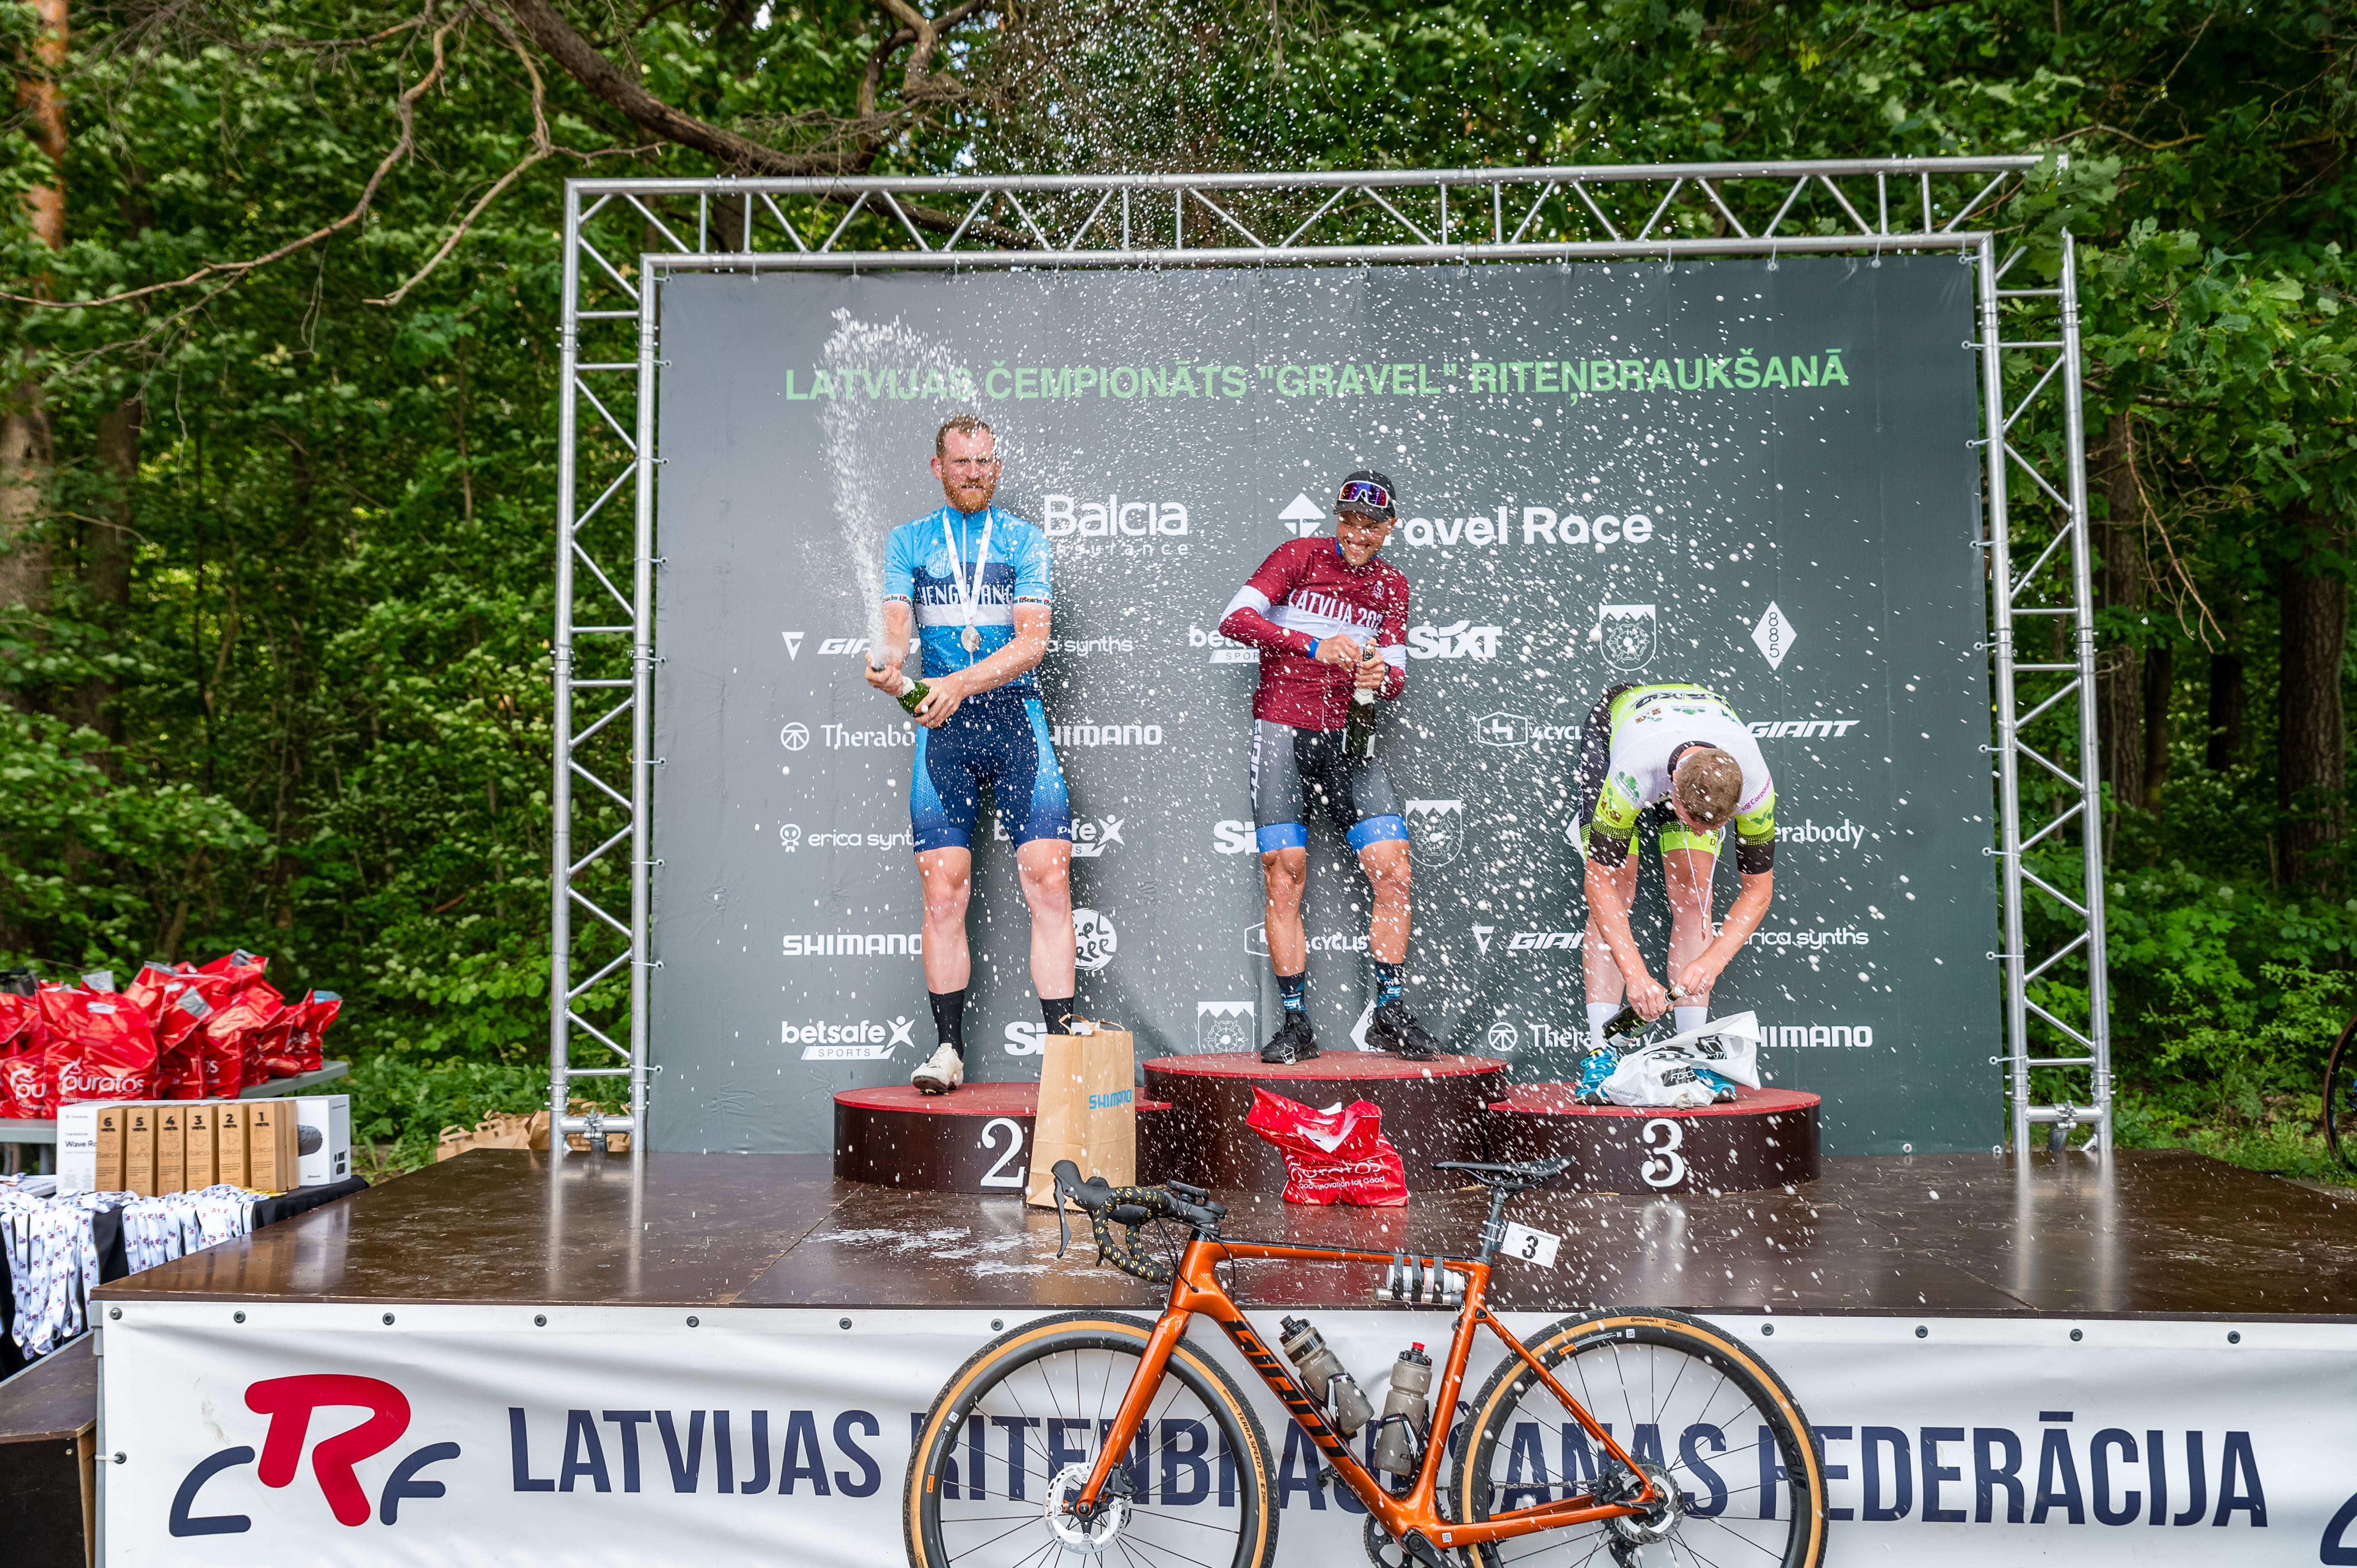 Bogdanovičs un Laizāne Tukumā kļūst par pirmajiem Latvijas čempioniem Gravel riteņbraukšanā +FOTO izlase 